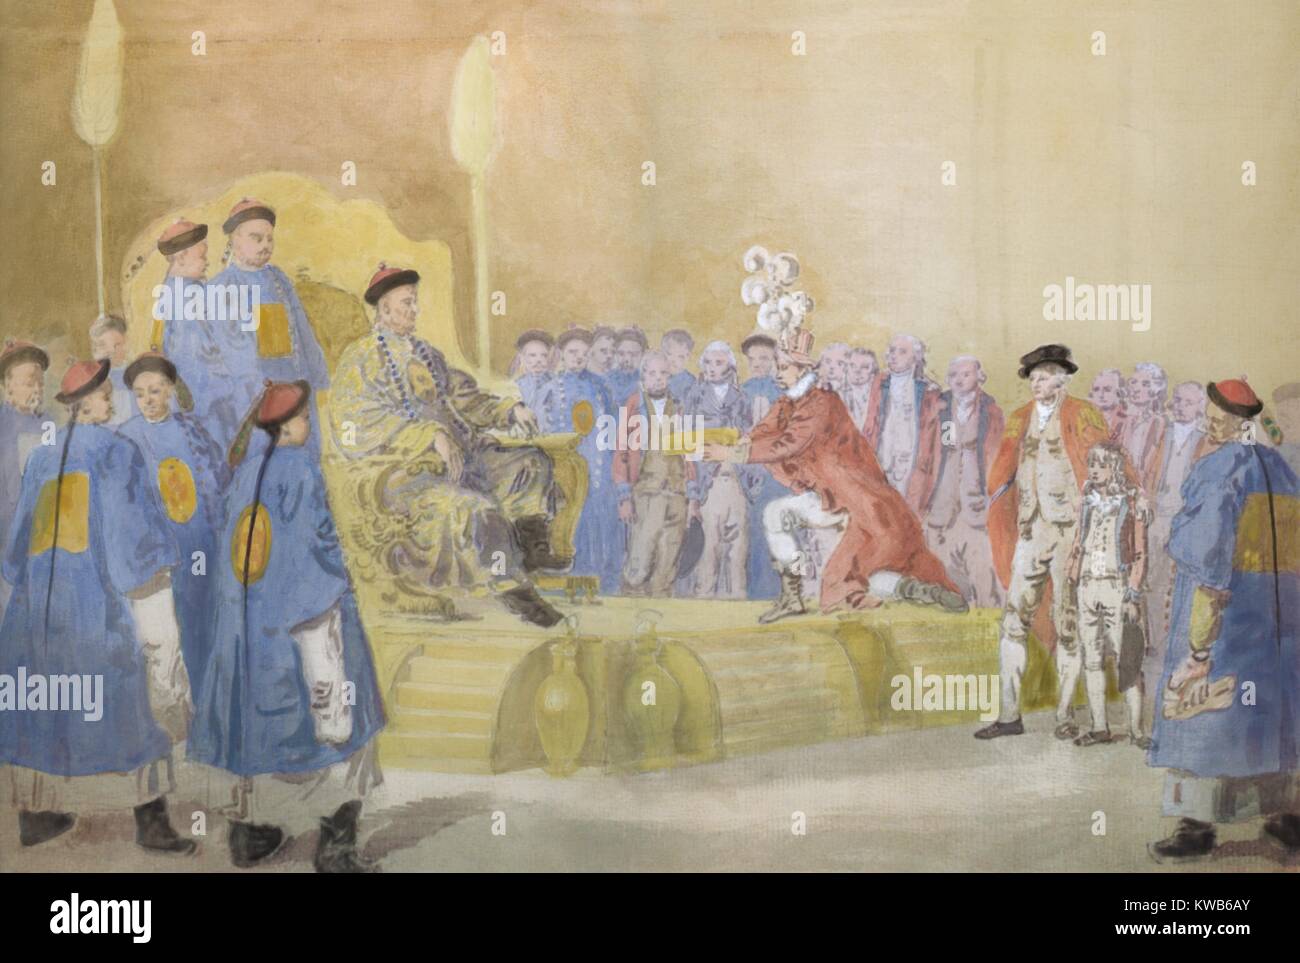 Der britische Botschafter George MacCartney kniend vor dem Qianlong Kaiser von China, Sept. 14, 1793. Hinter der Kaiser ist vizekönig Liang Kentang und die Zukunft Kaiser Jiaqing. Zu MacCartney's links sind George Staunton und seine Chinesisch sprechenden Sohn, (BSIC 2016 9 1) Stockfoto